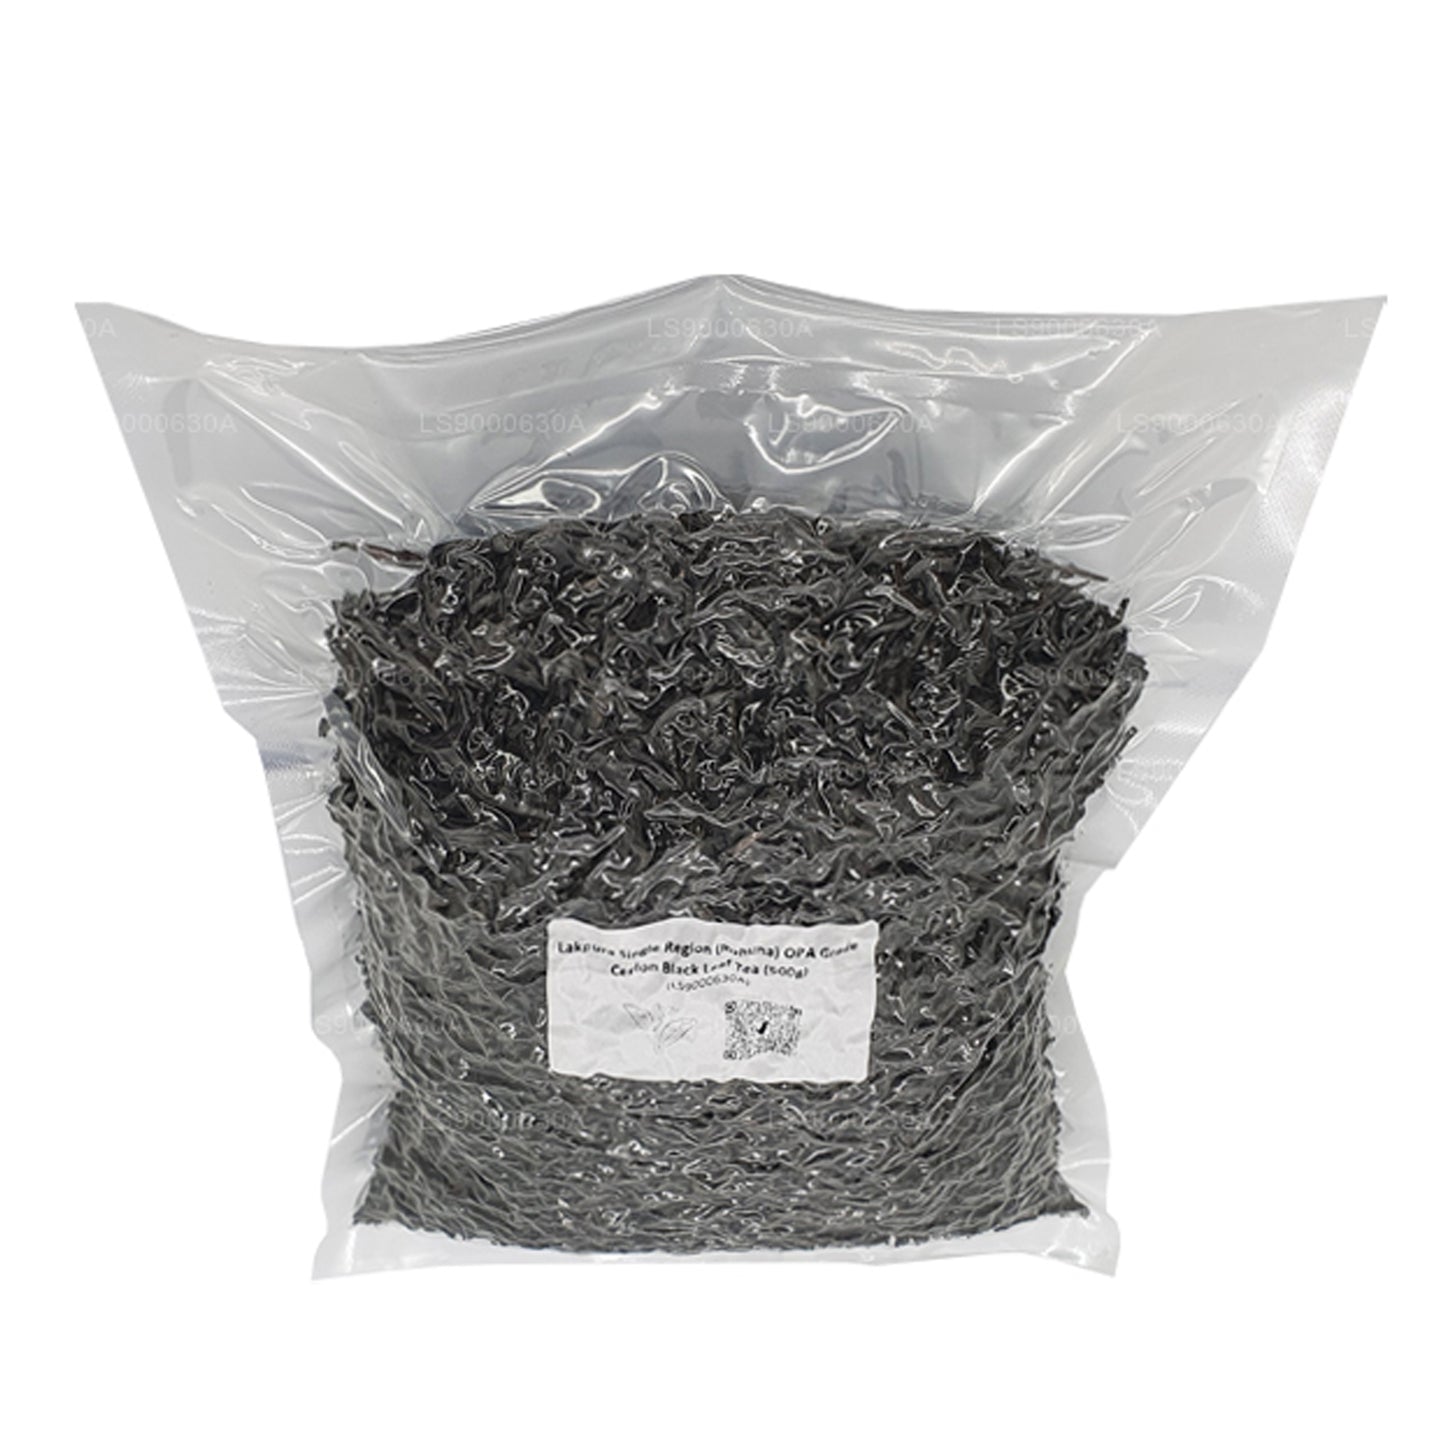 Lakpura Single Region (Ruhuna) Ceylon zwarte bladthee van OPA-kwaliteit (500 g)